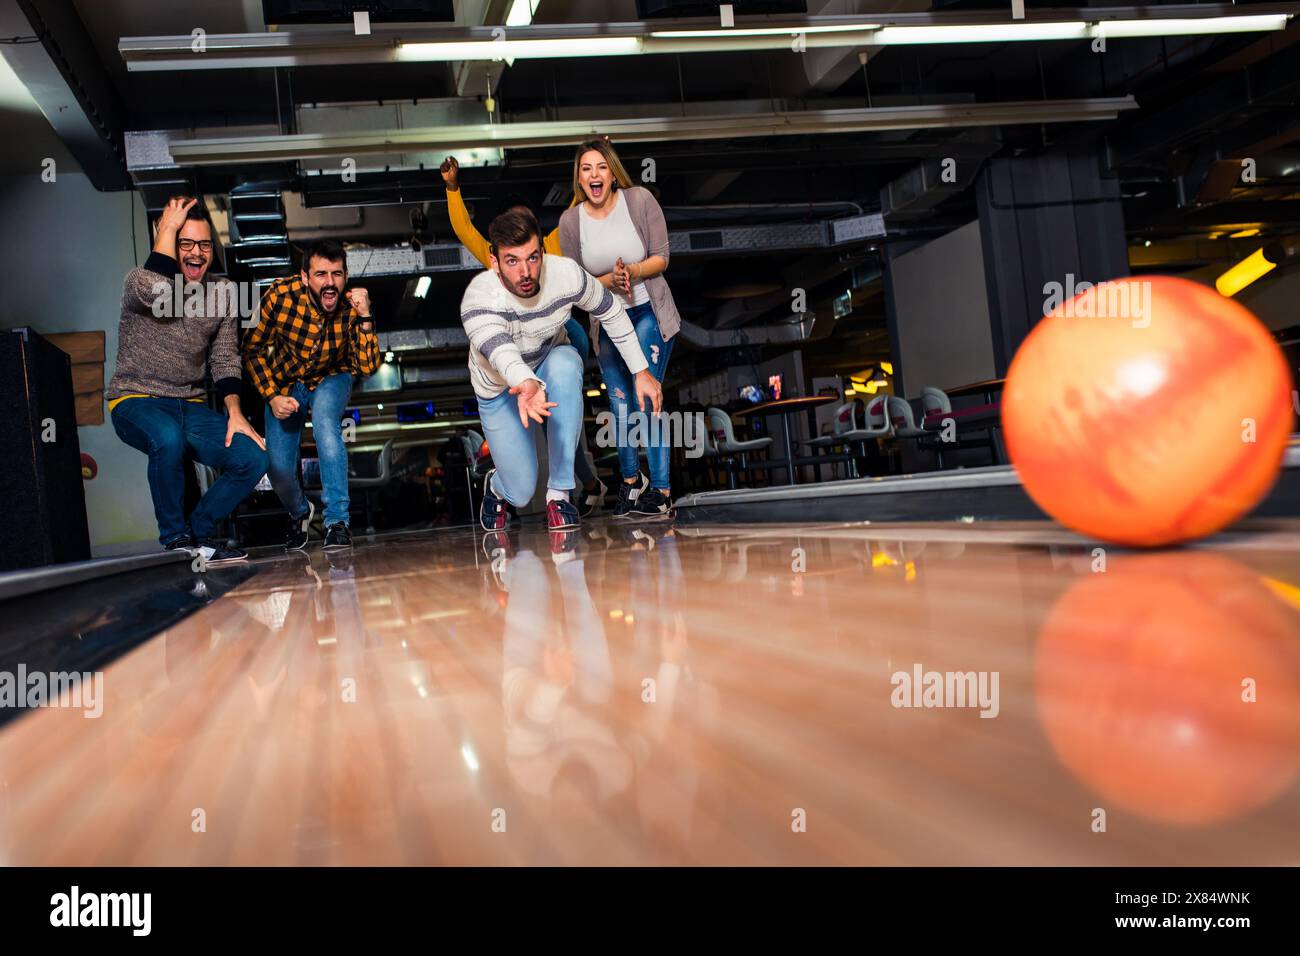 Eine Gruppe von Freunden genießt die gemeinsame Zeit, lacht und jubelt beim Bowling im Club. Stockfoto